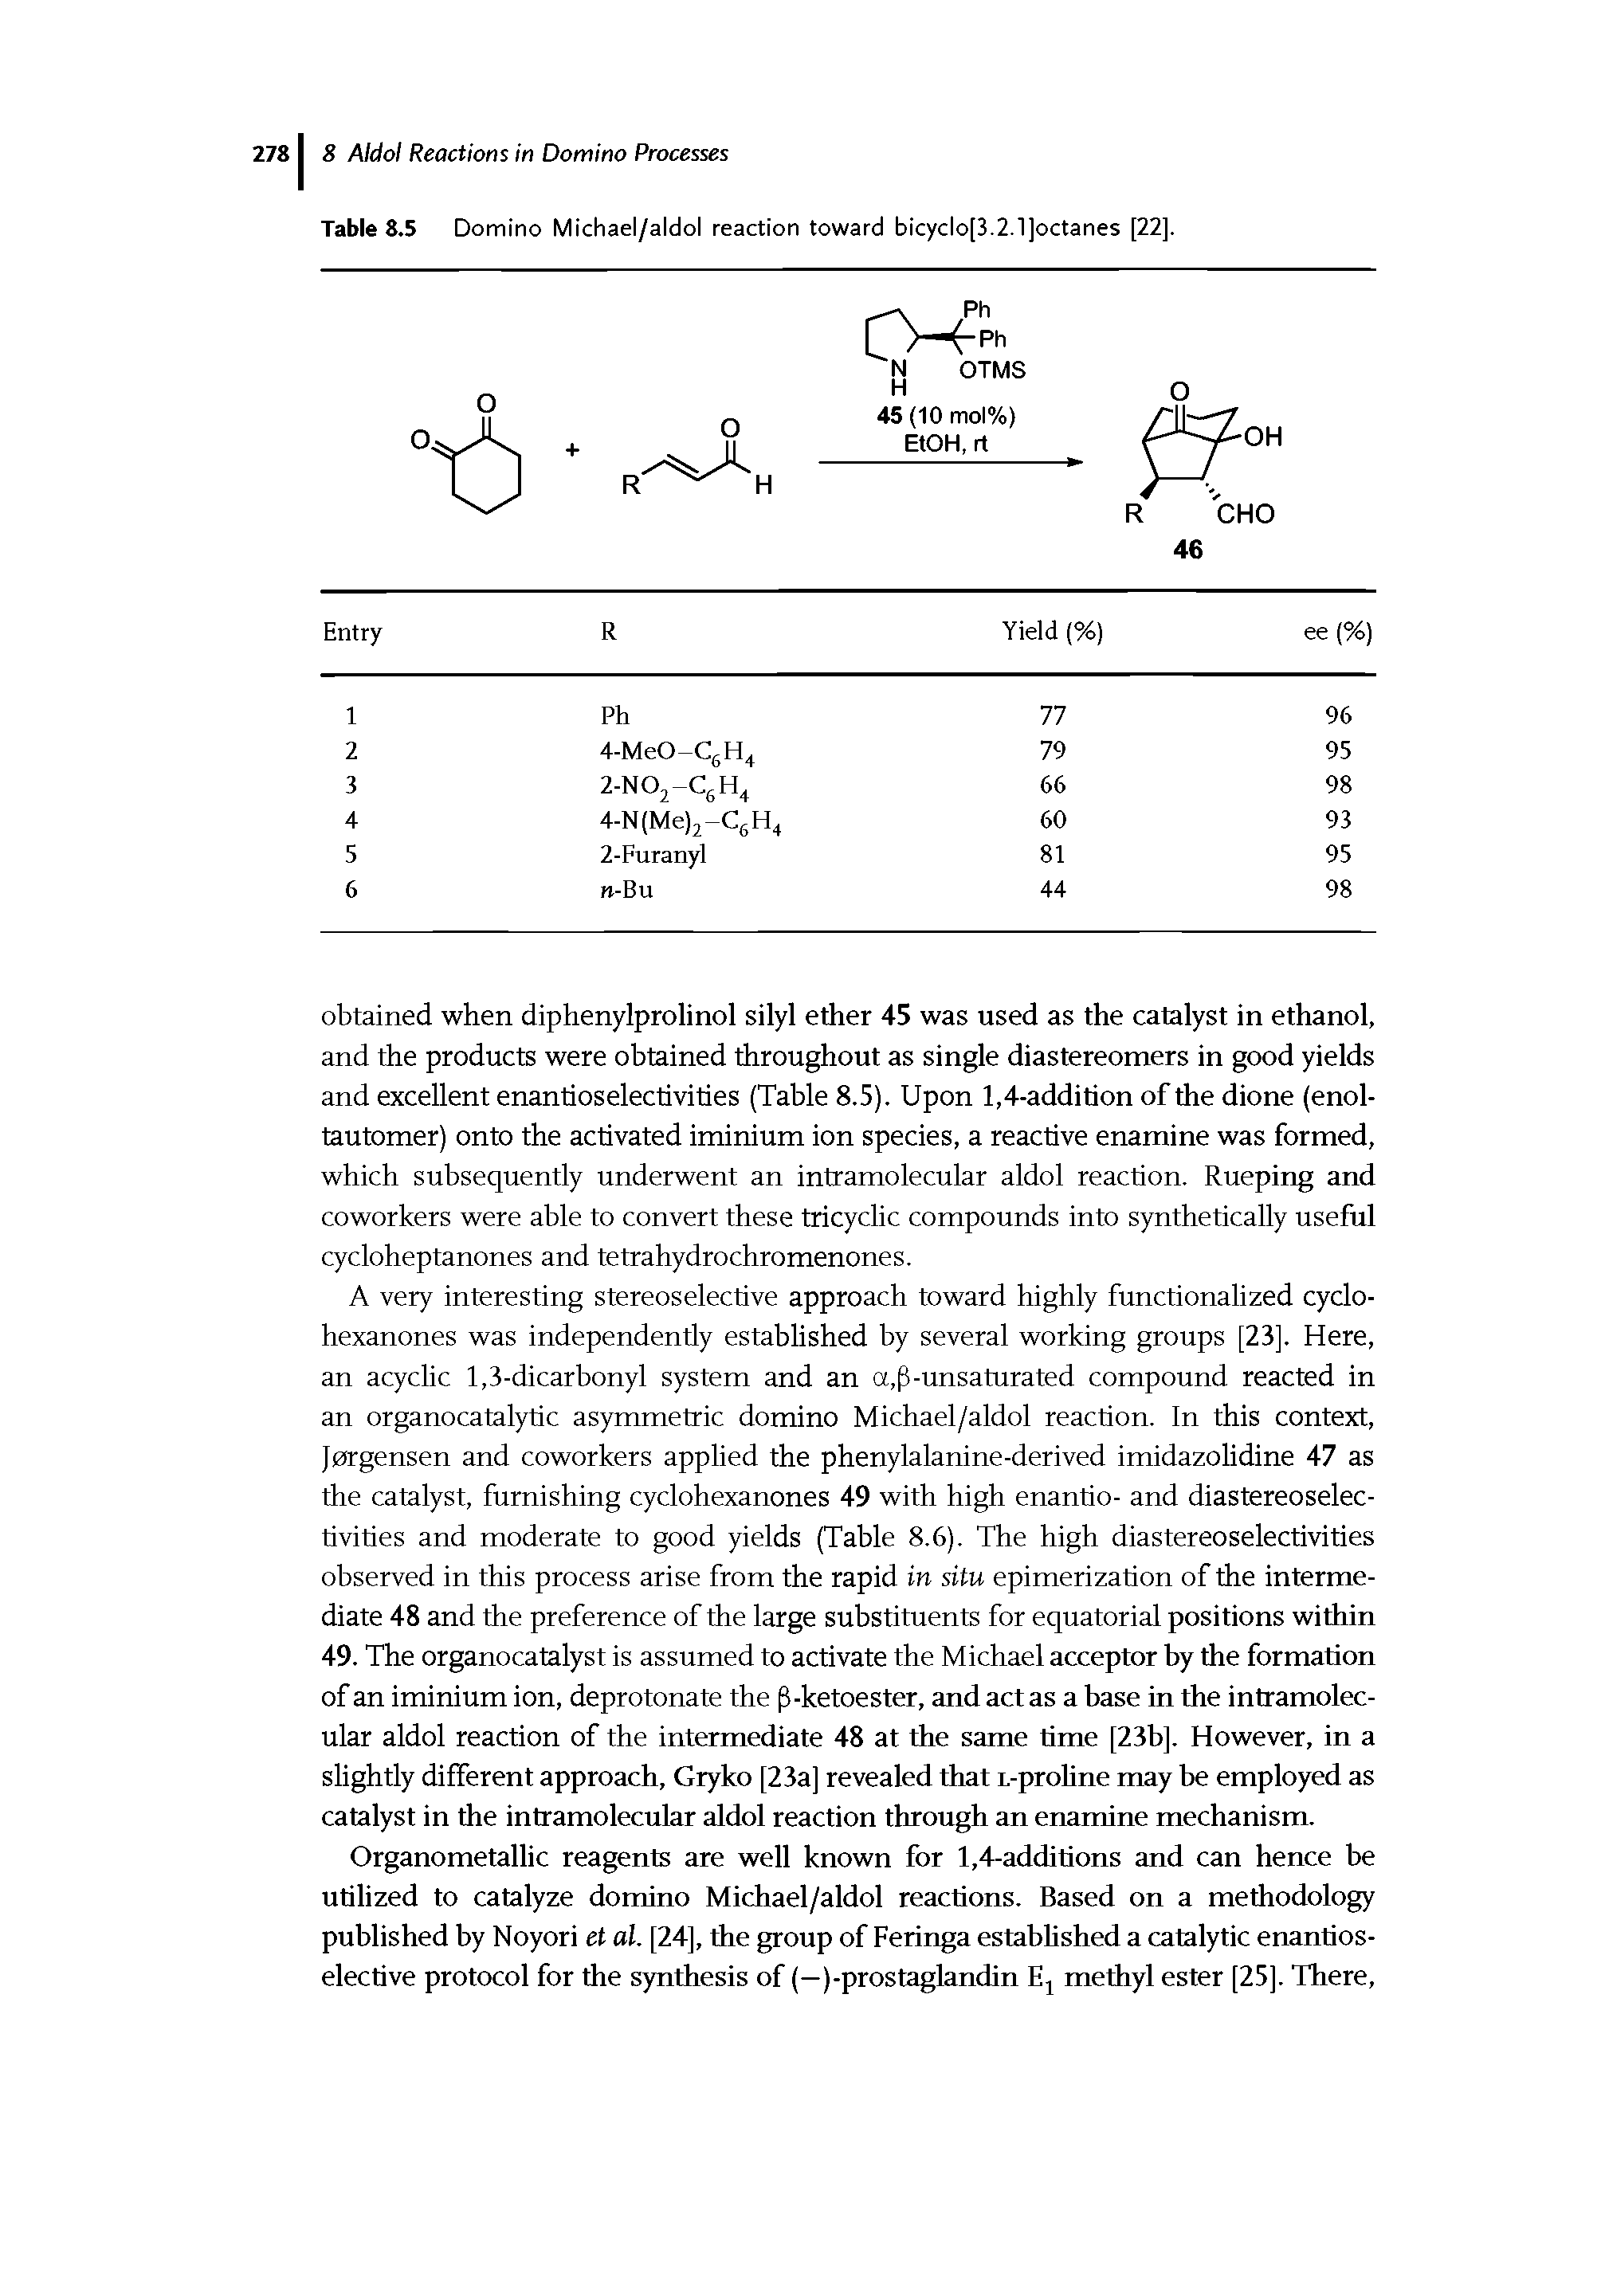 Table 8.5 Domino Michael/aldol reaction toward bicyclo[3.2.1]octanes [22].